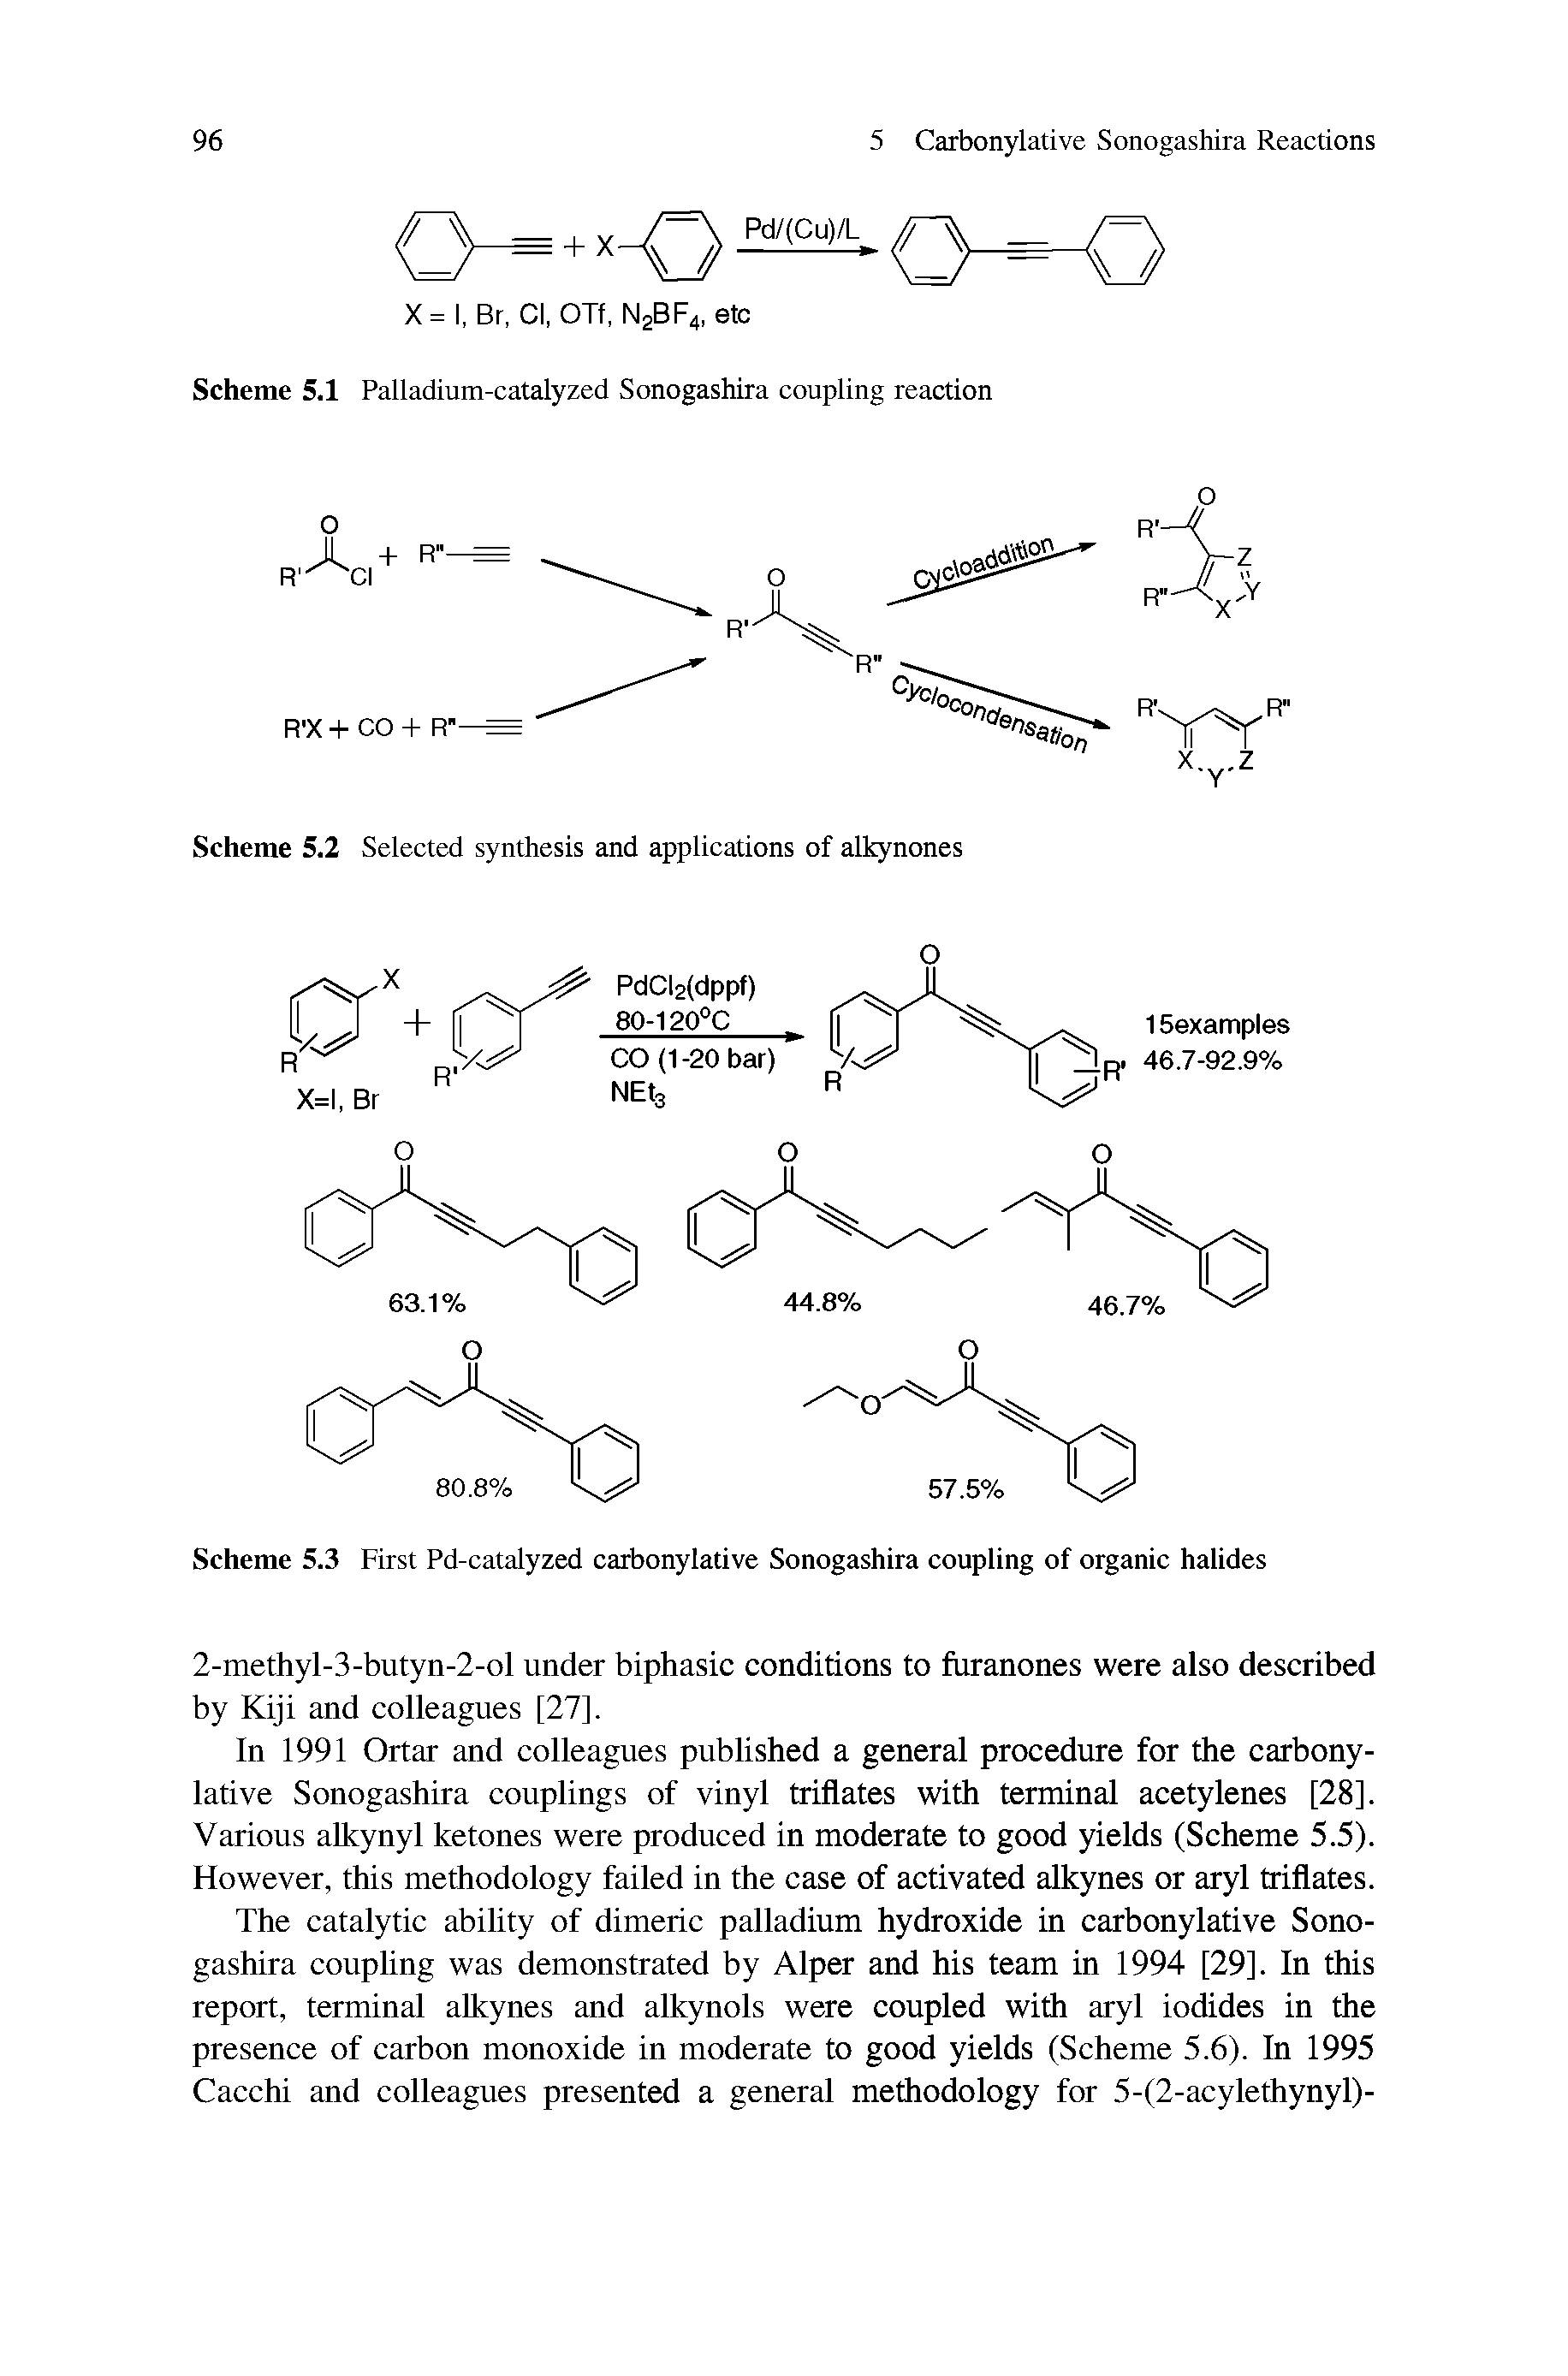 Scheme 5.1 Palladium-catalyzed Sonogashira coupling reaction...